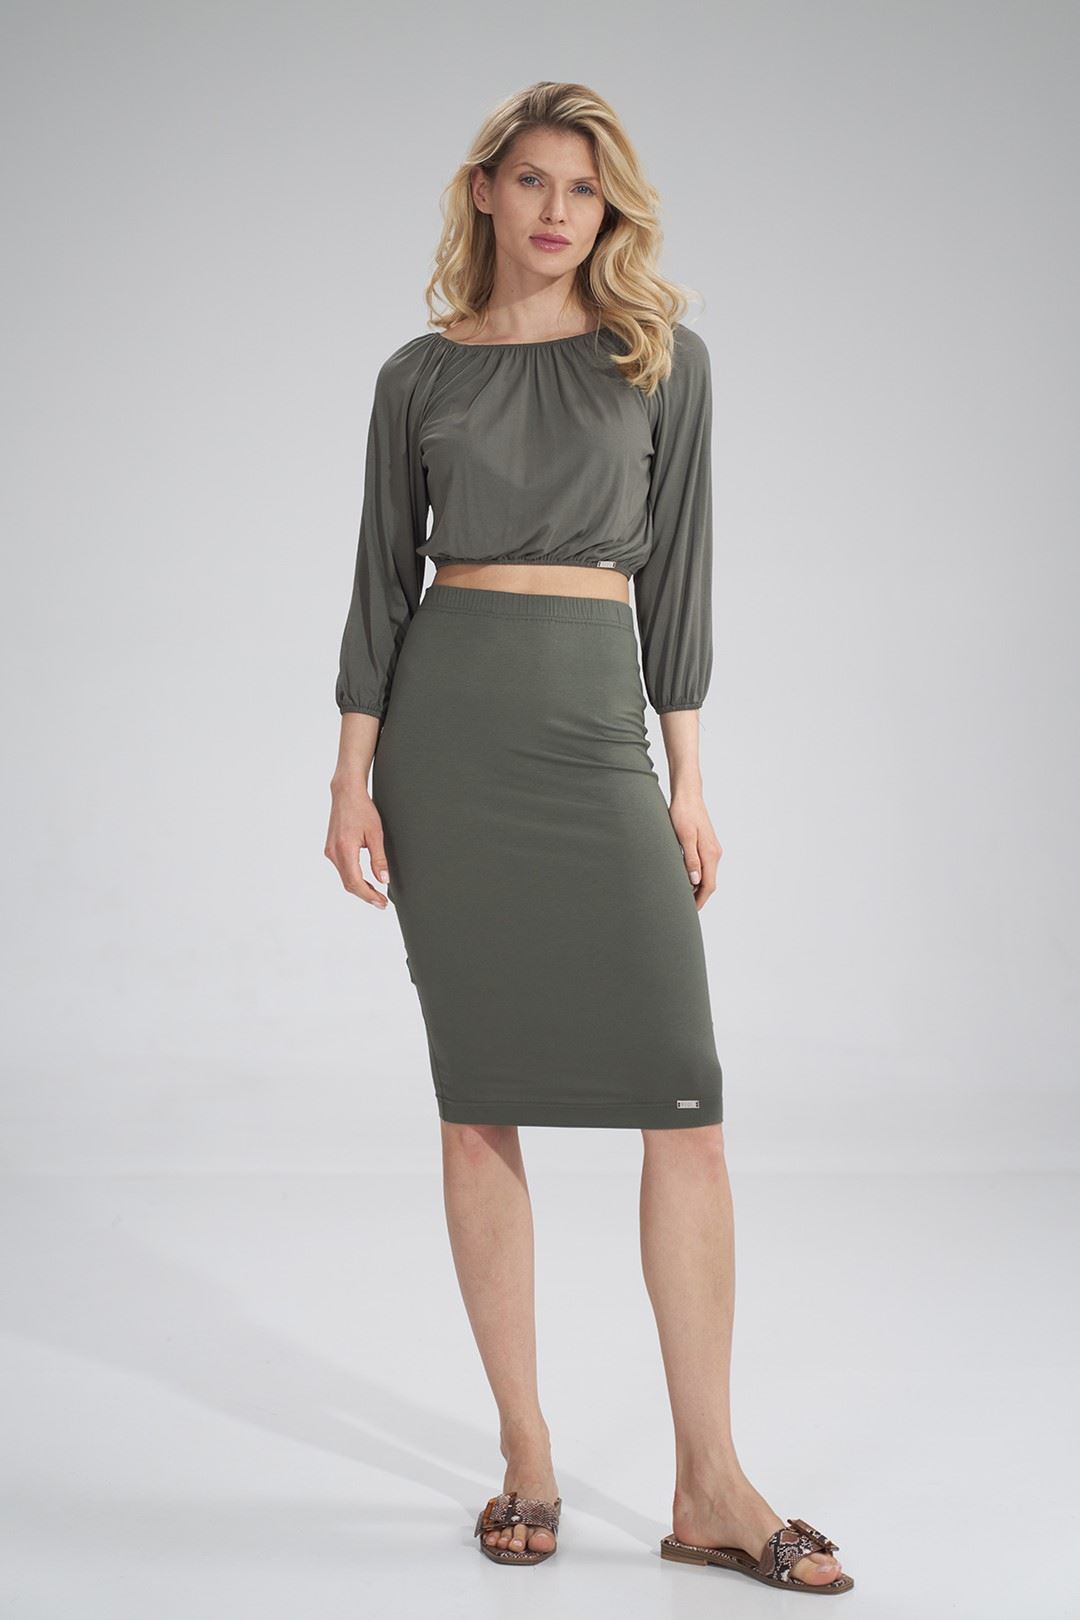 Skirt M793 Olive Green S